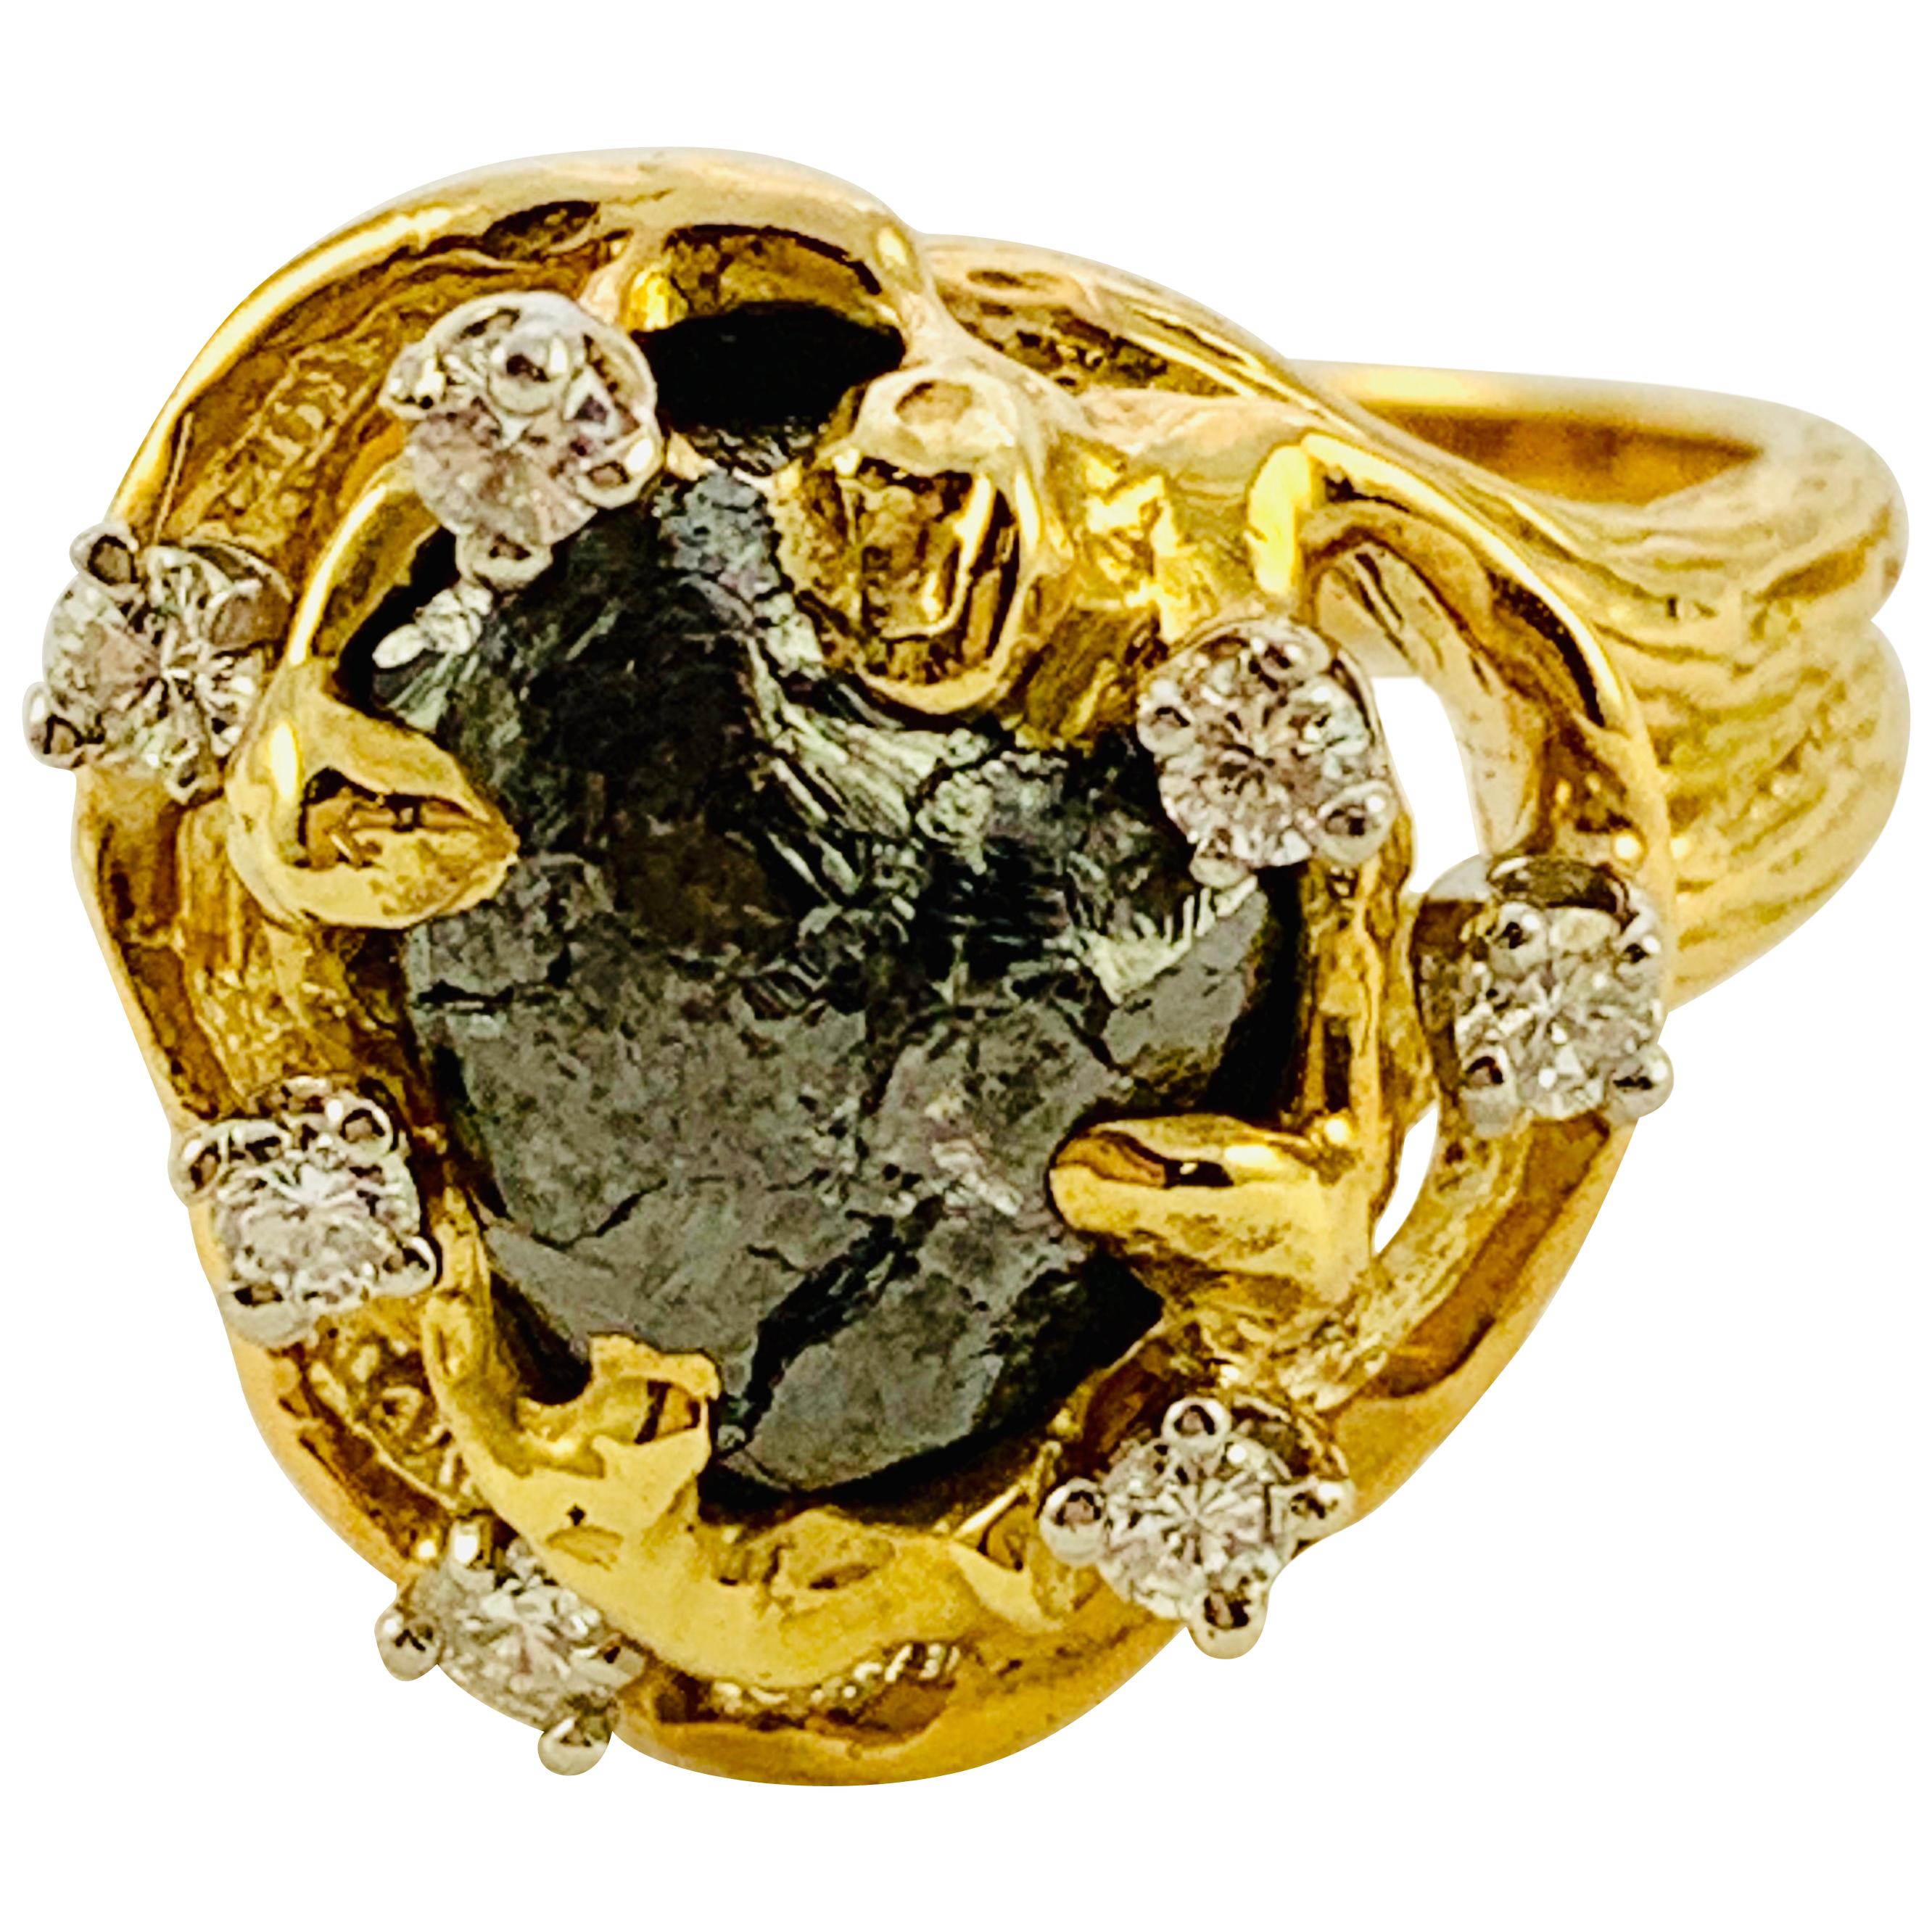 Peter Linderman 18 Karat Yellow Gold, Diamond and Rough Diamond Ladies Ring